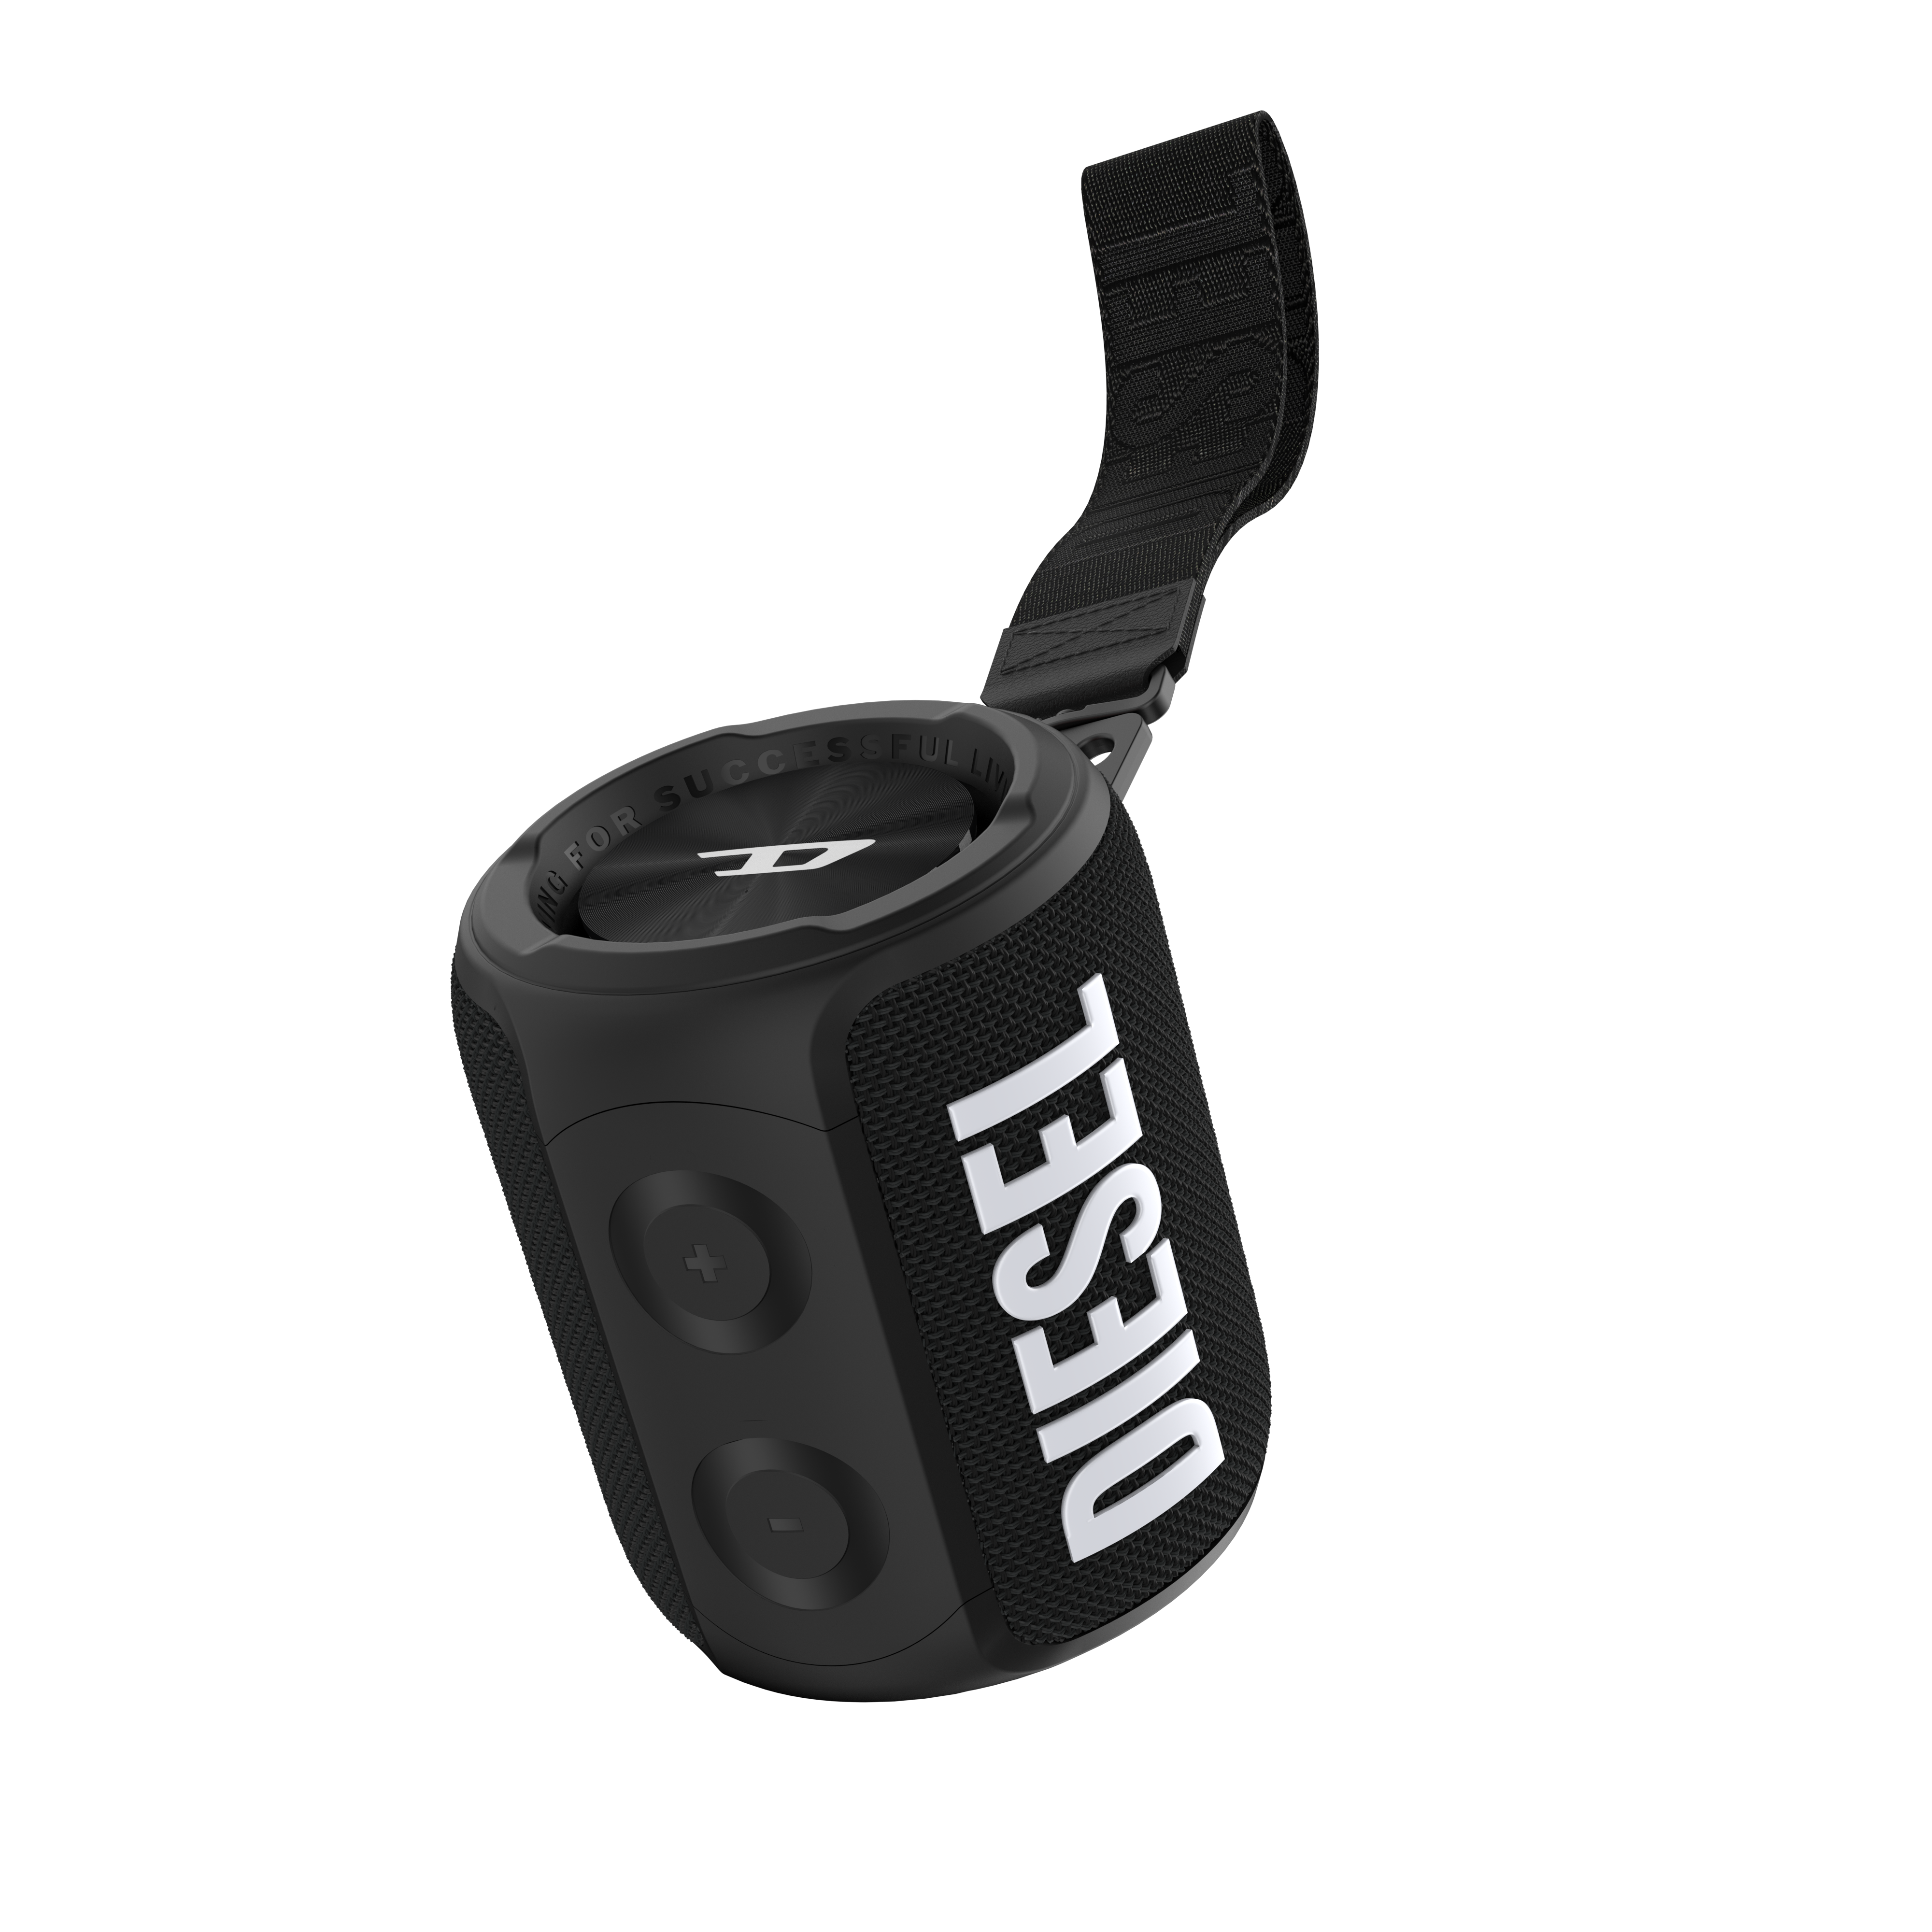 Diesel Wireless Speaker Bluetooth 5.0 iPX7 Multi-Pairing - Black